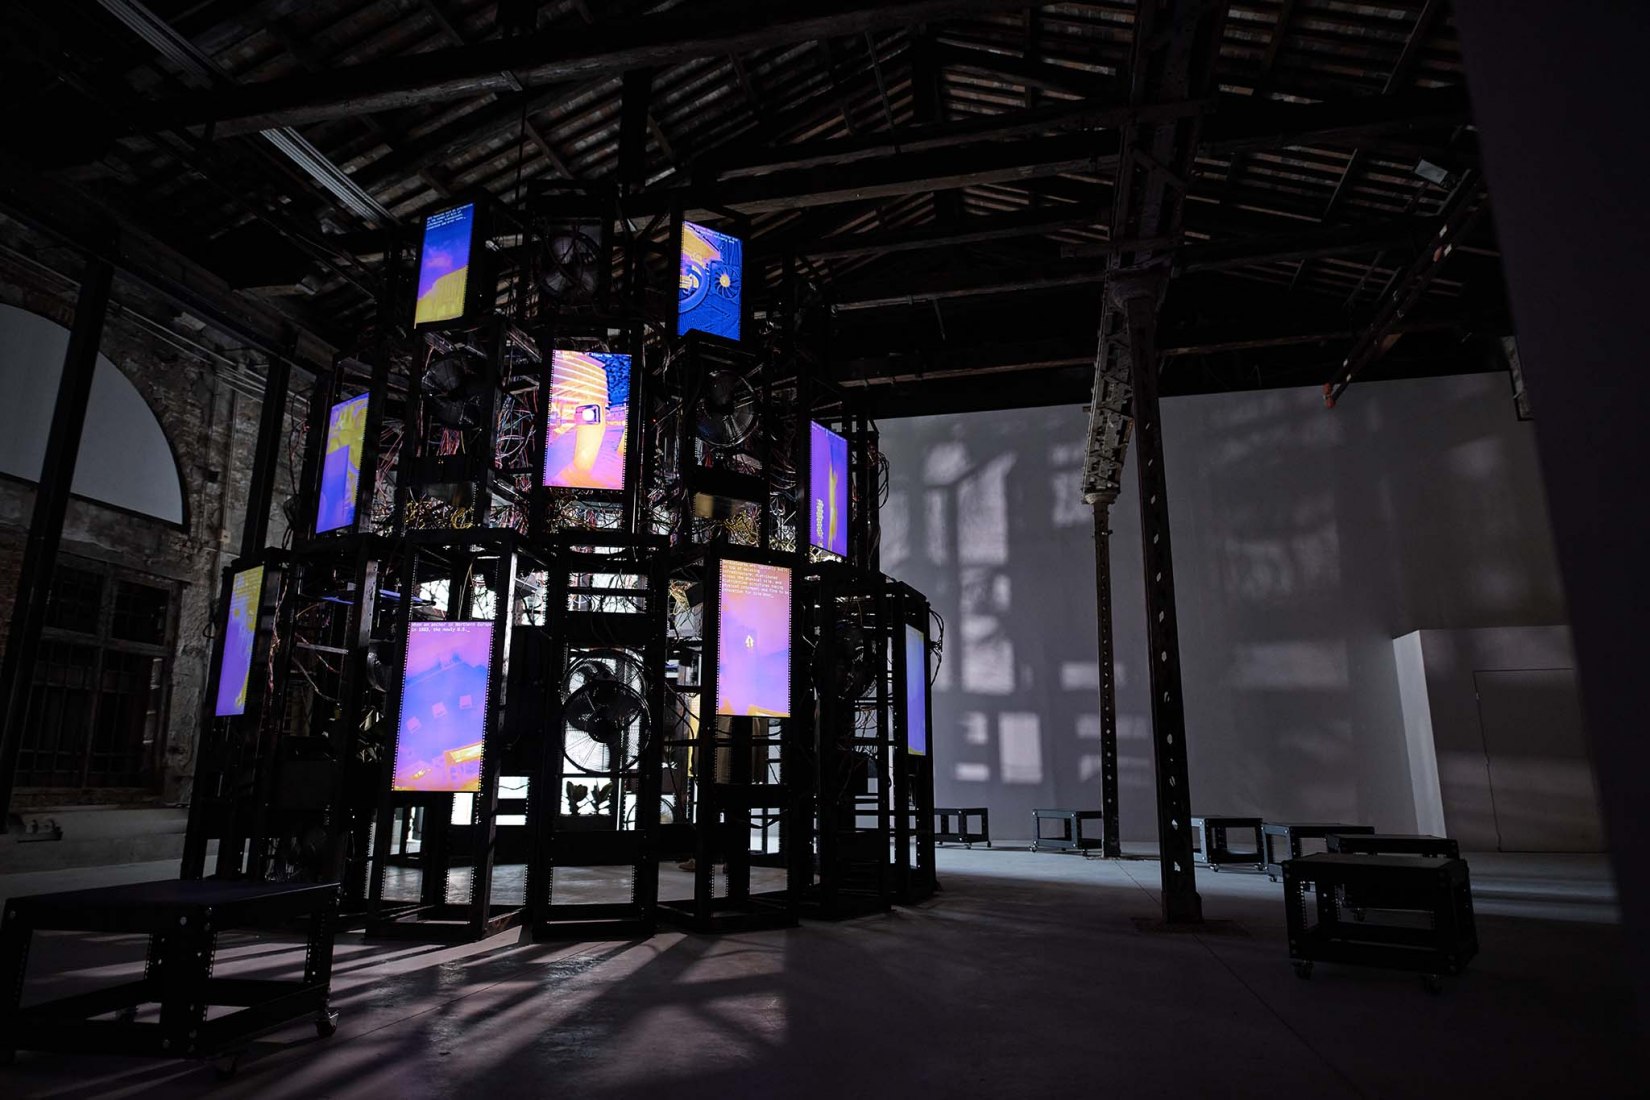 Pabellón de Irlanda en la 17a Exposición Internacional de Arquitectura de La Biennale di Venezia por ANNEX. Fotografía por Alan Butler